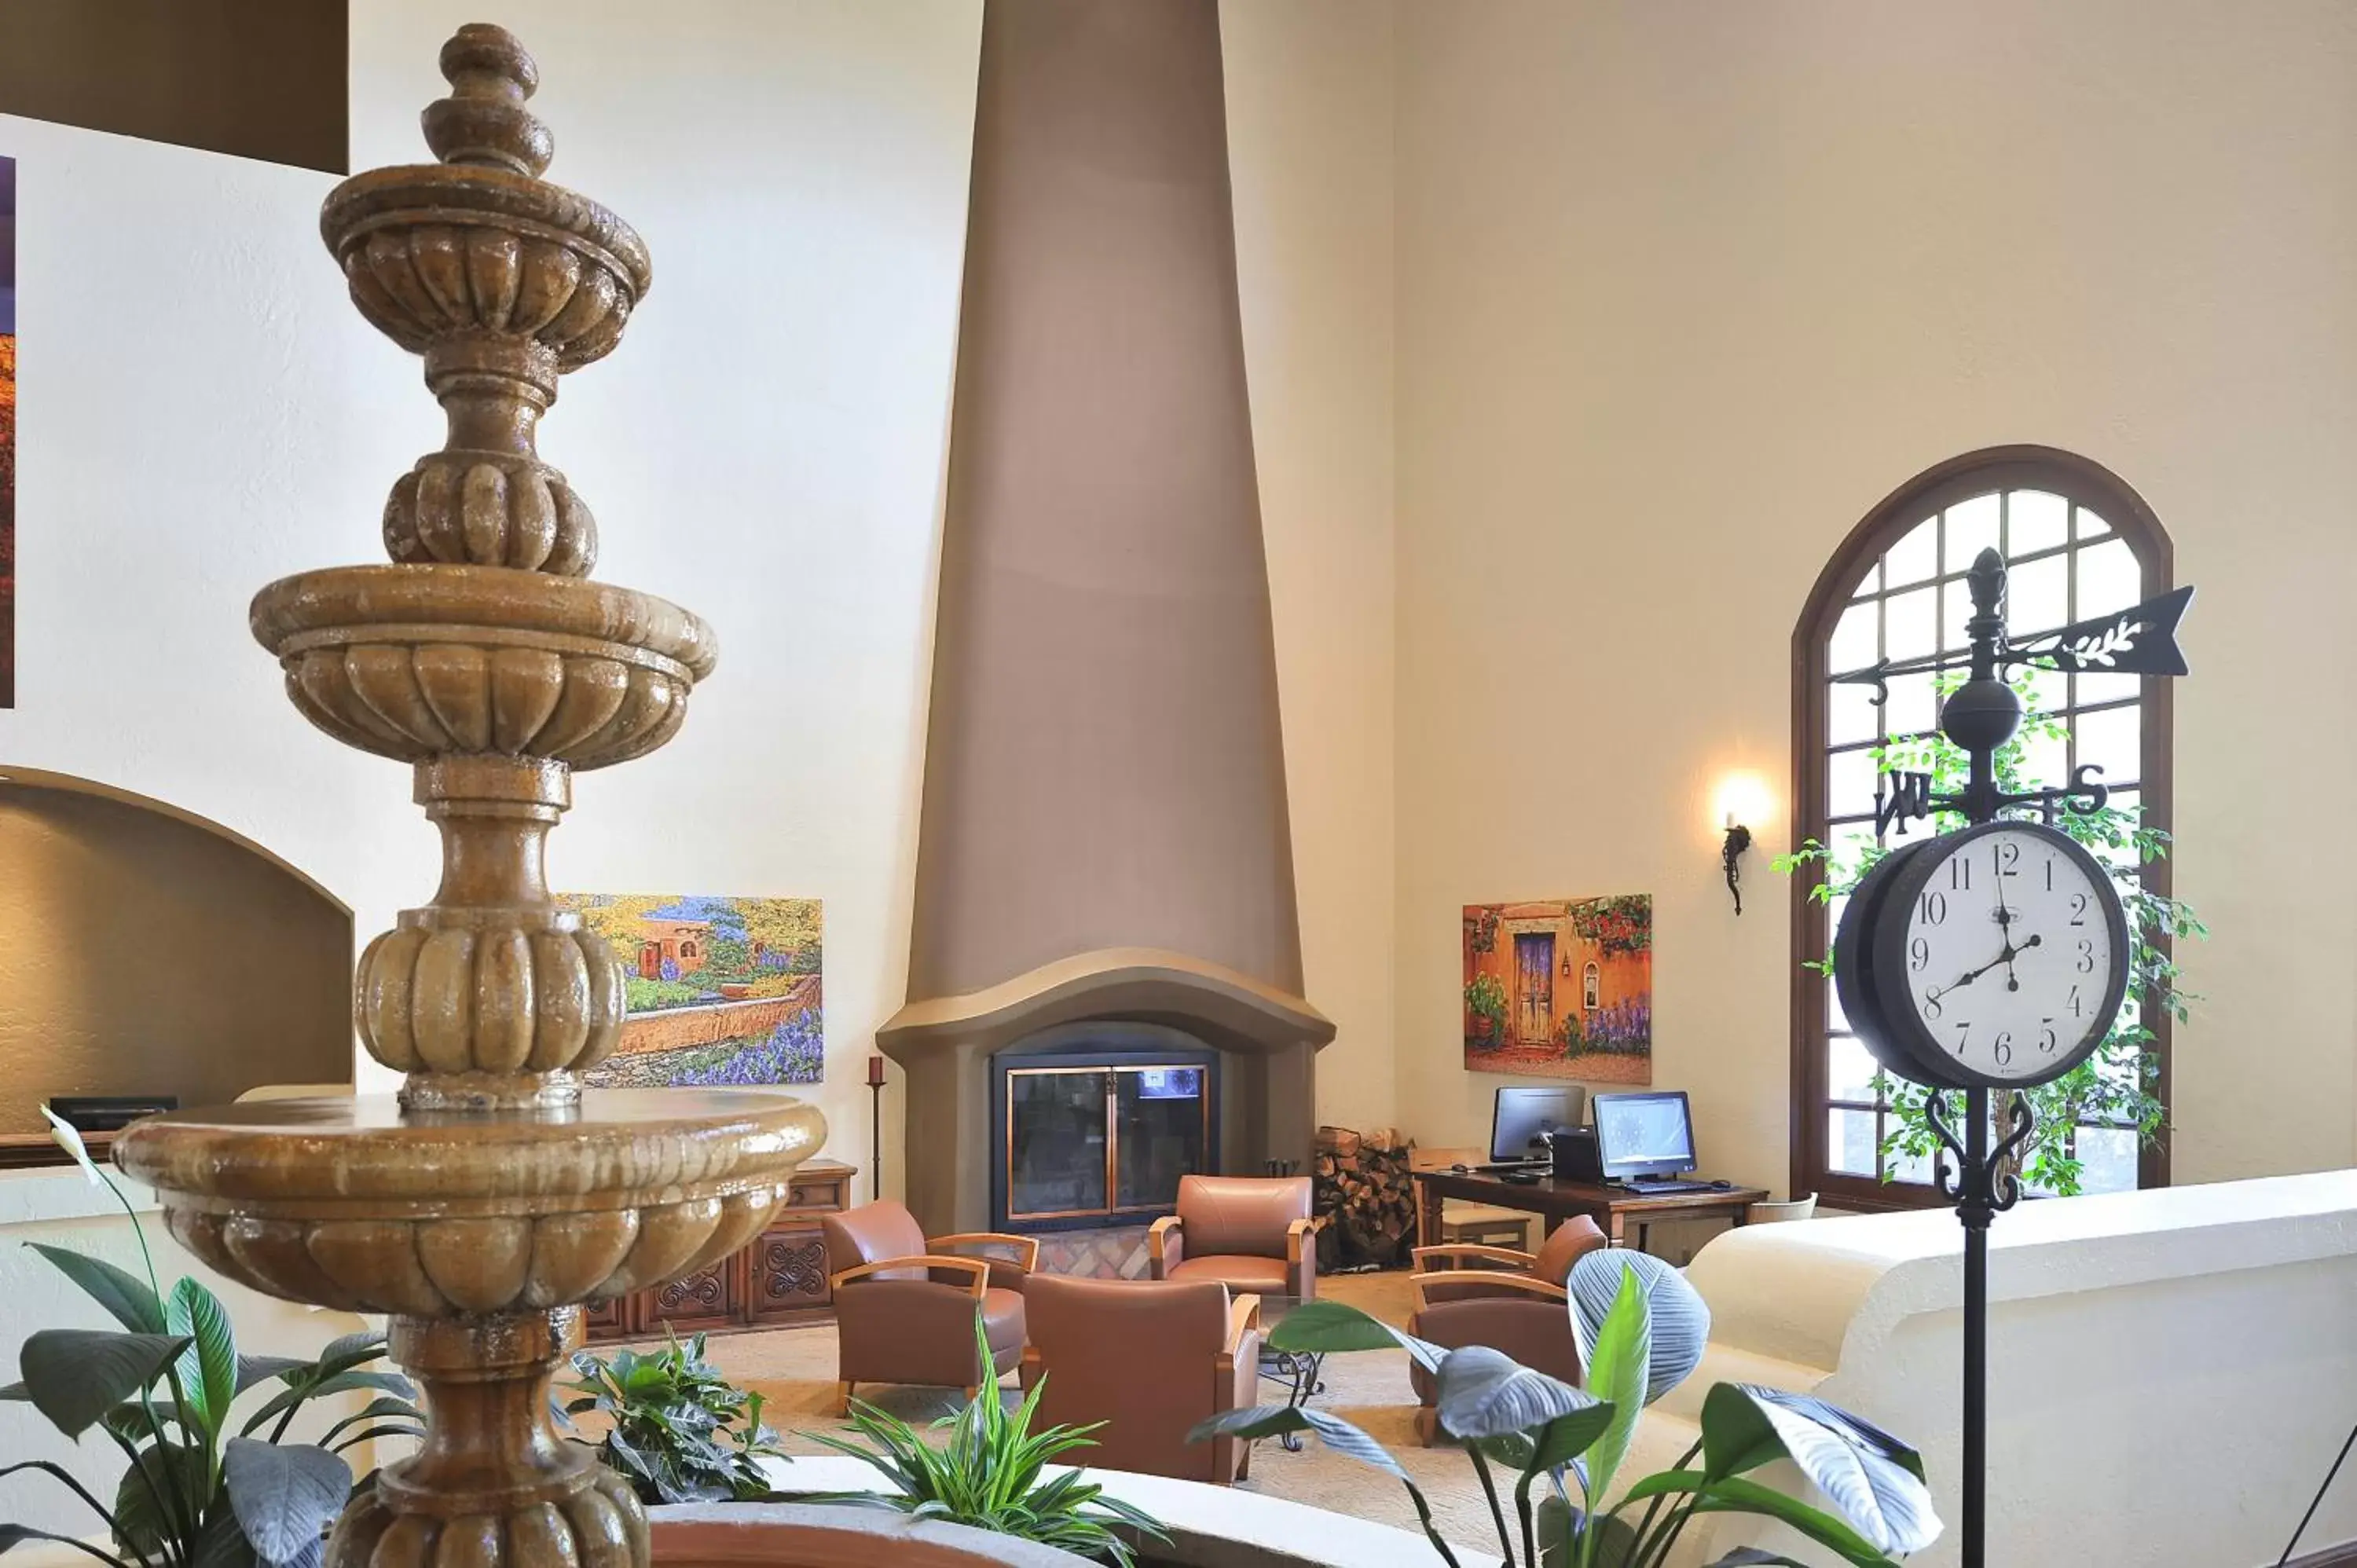 Lobby or reception in Los Abrigados Resort and Spa